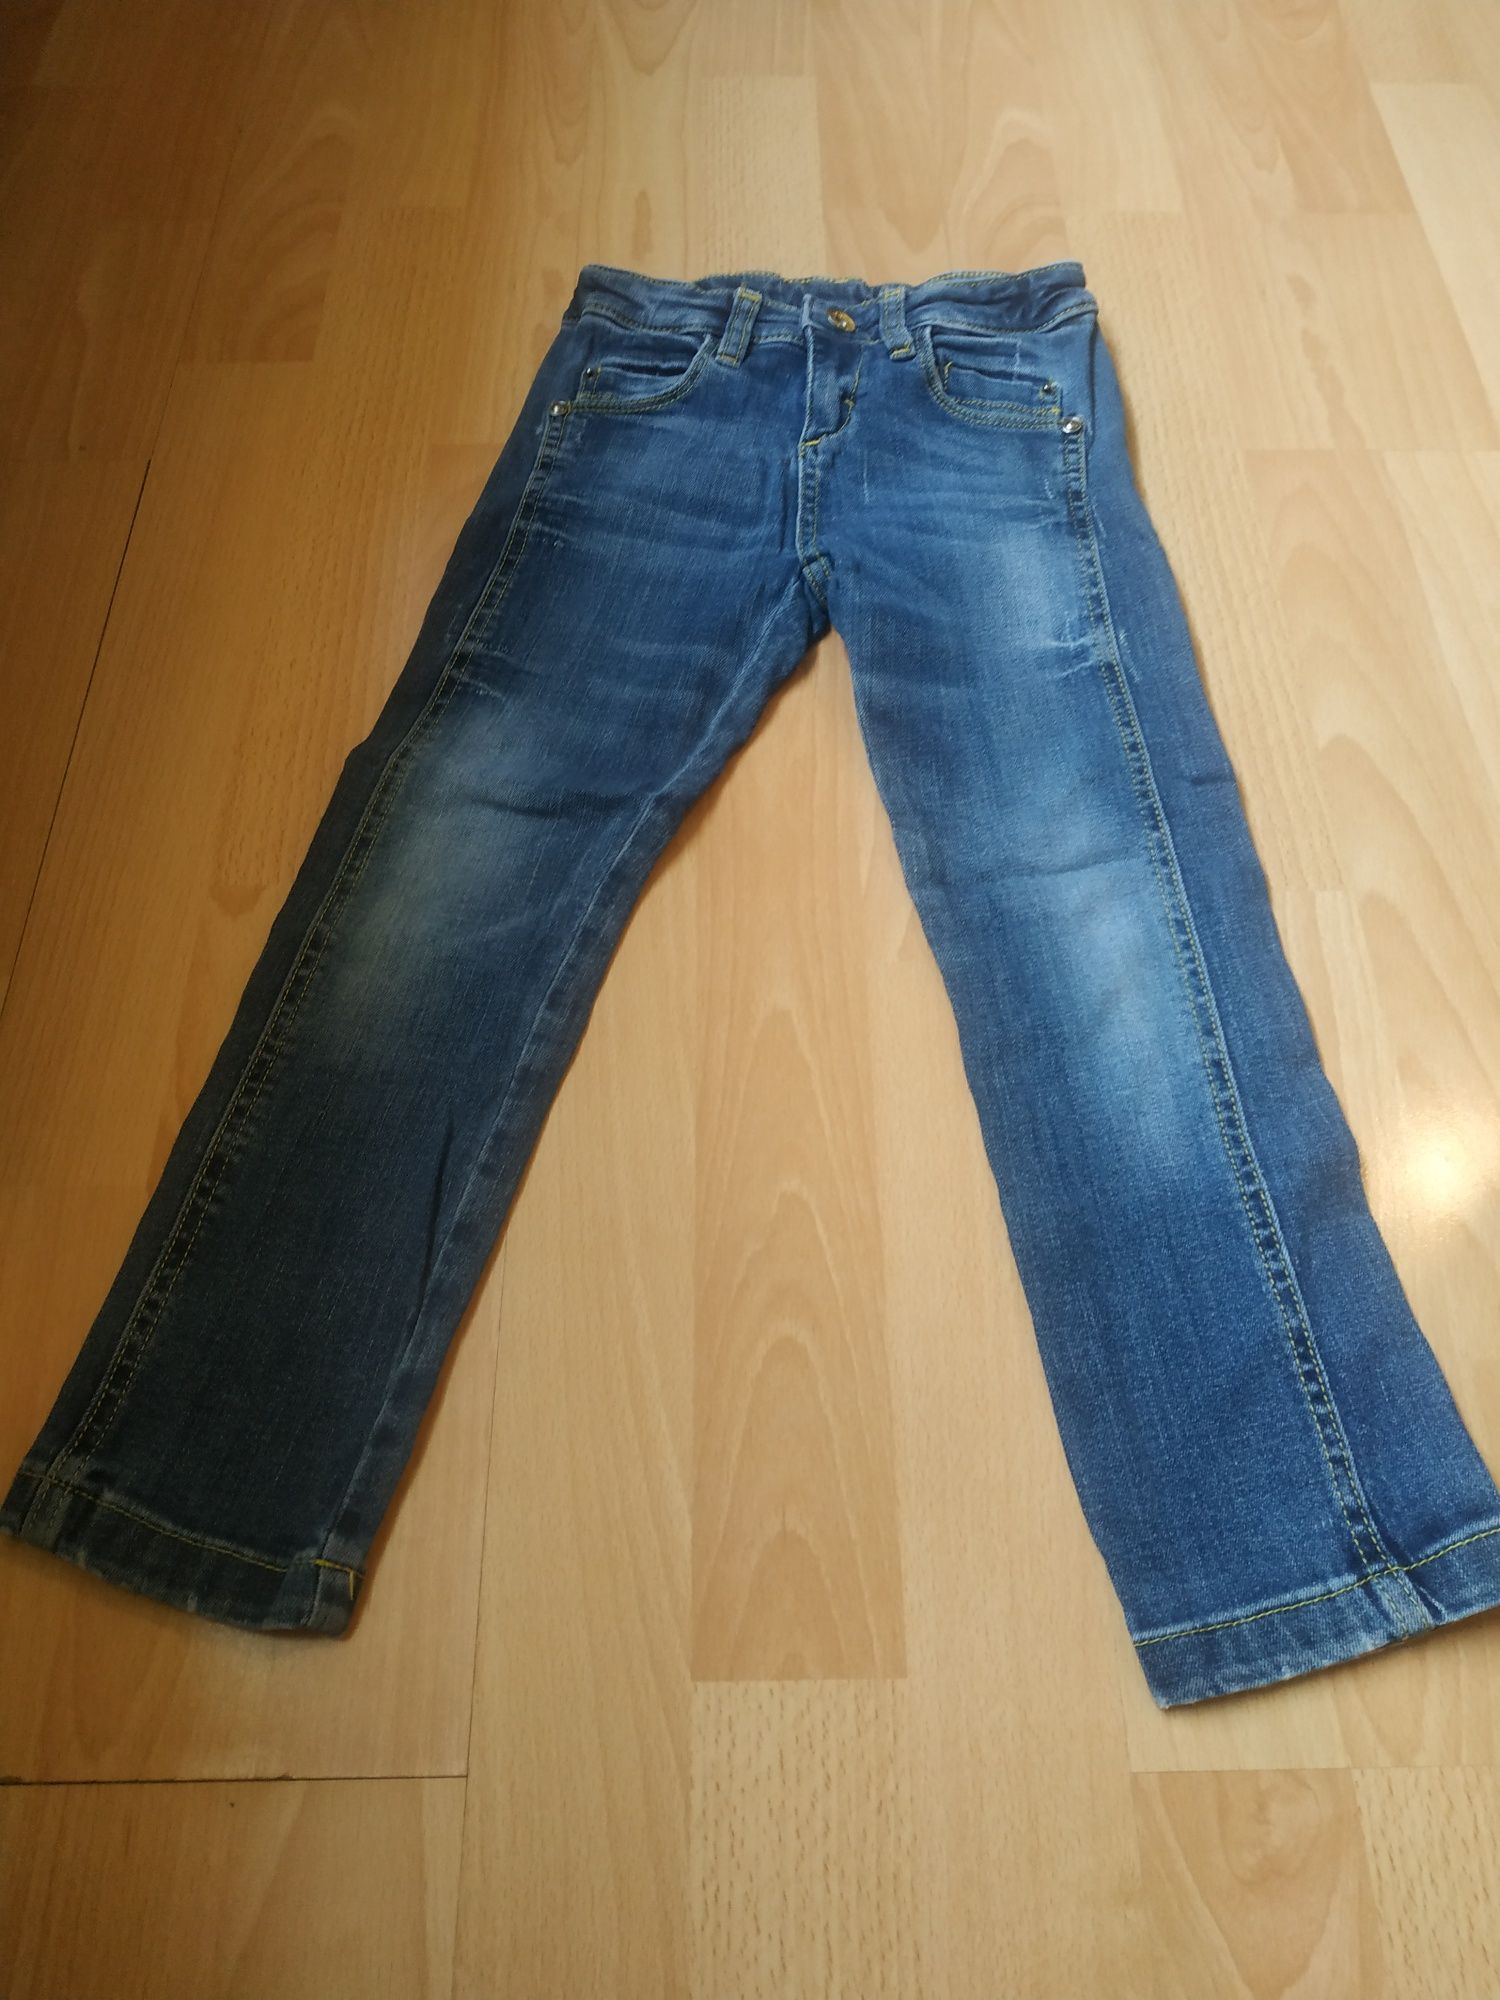 Spodnie chłopięce dżinsowe r.110